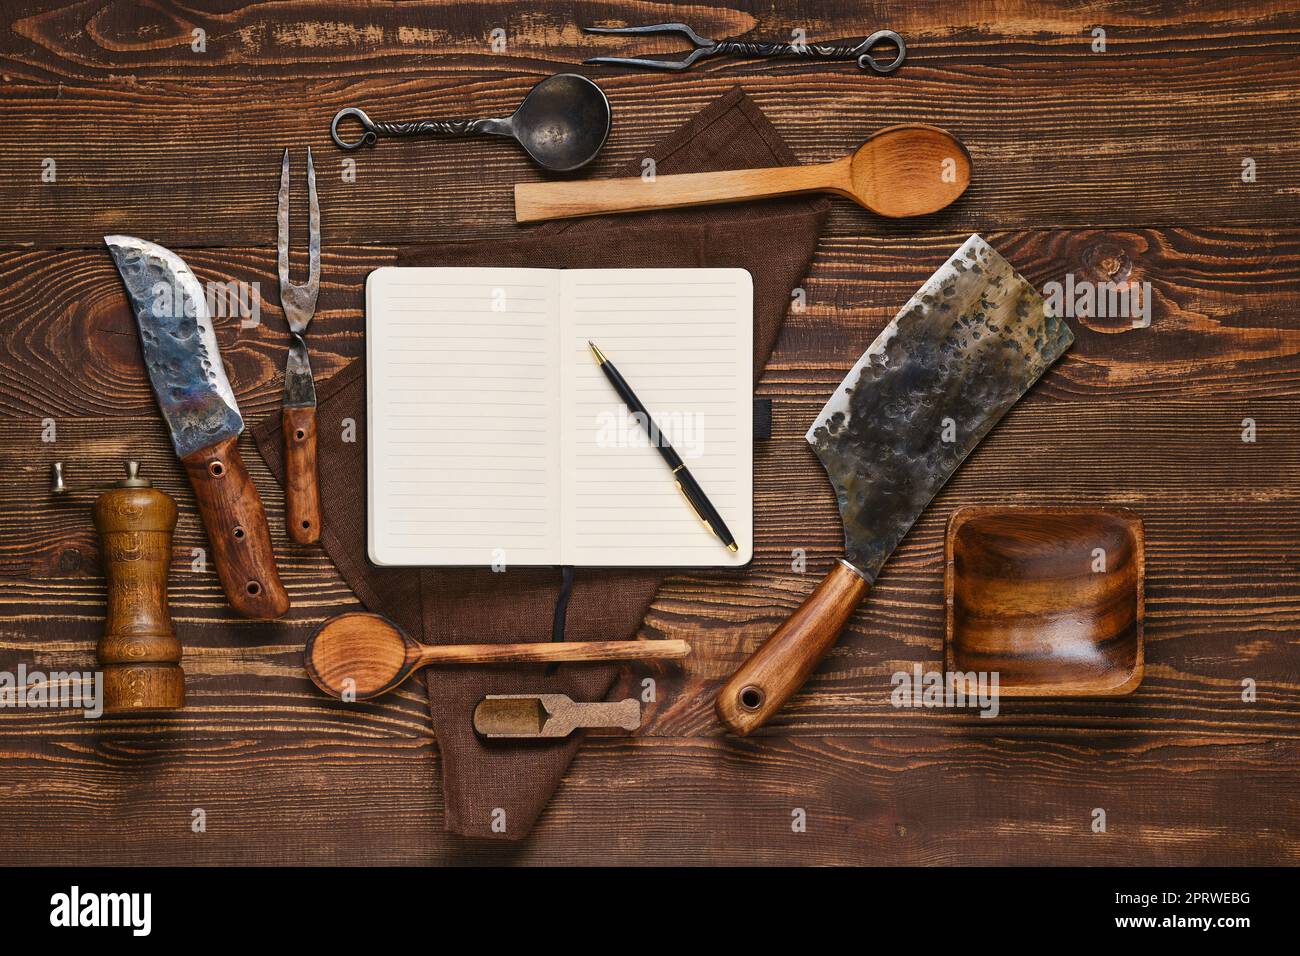 Blick von oben auf alte Steakgabel, Messer und Beil auf einem Holztisch neben dem Notizbuch Stockfoto